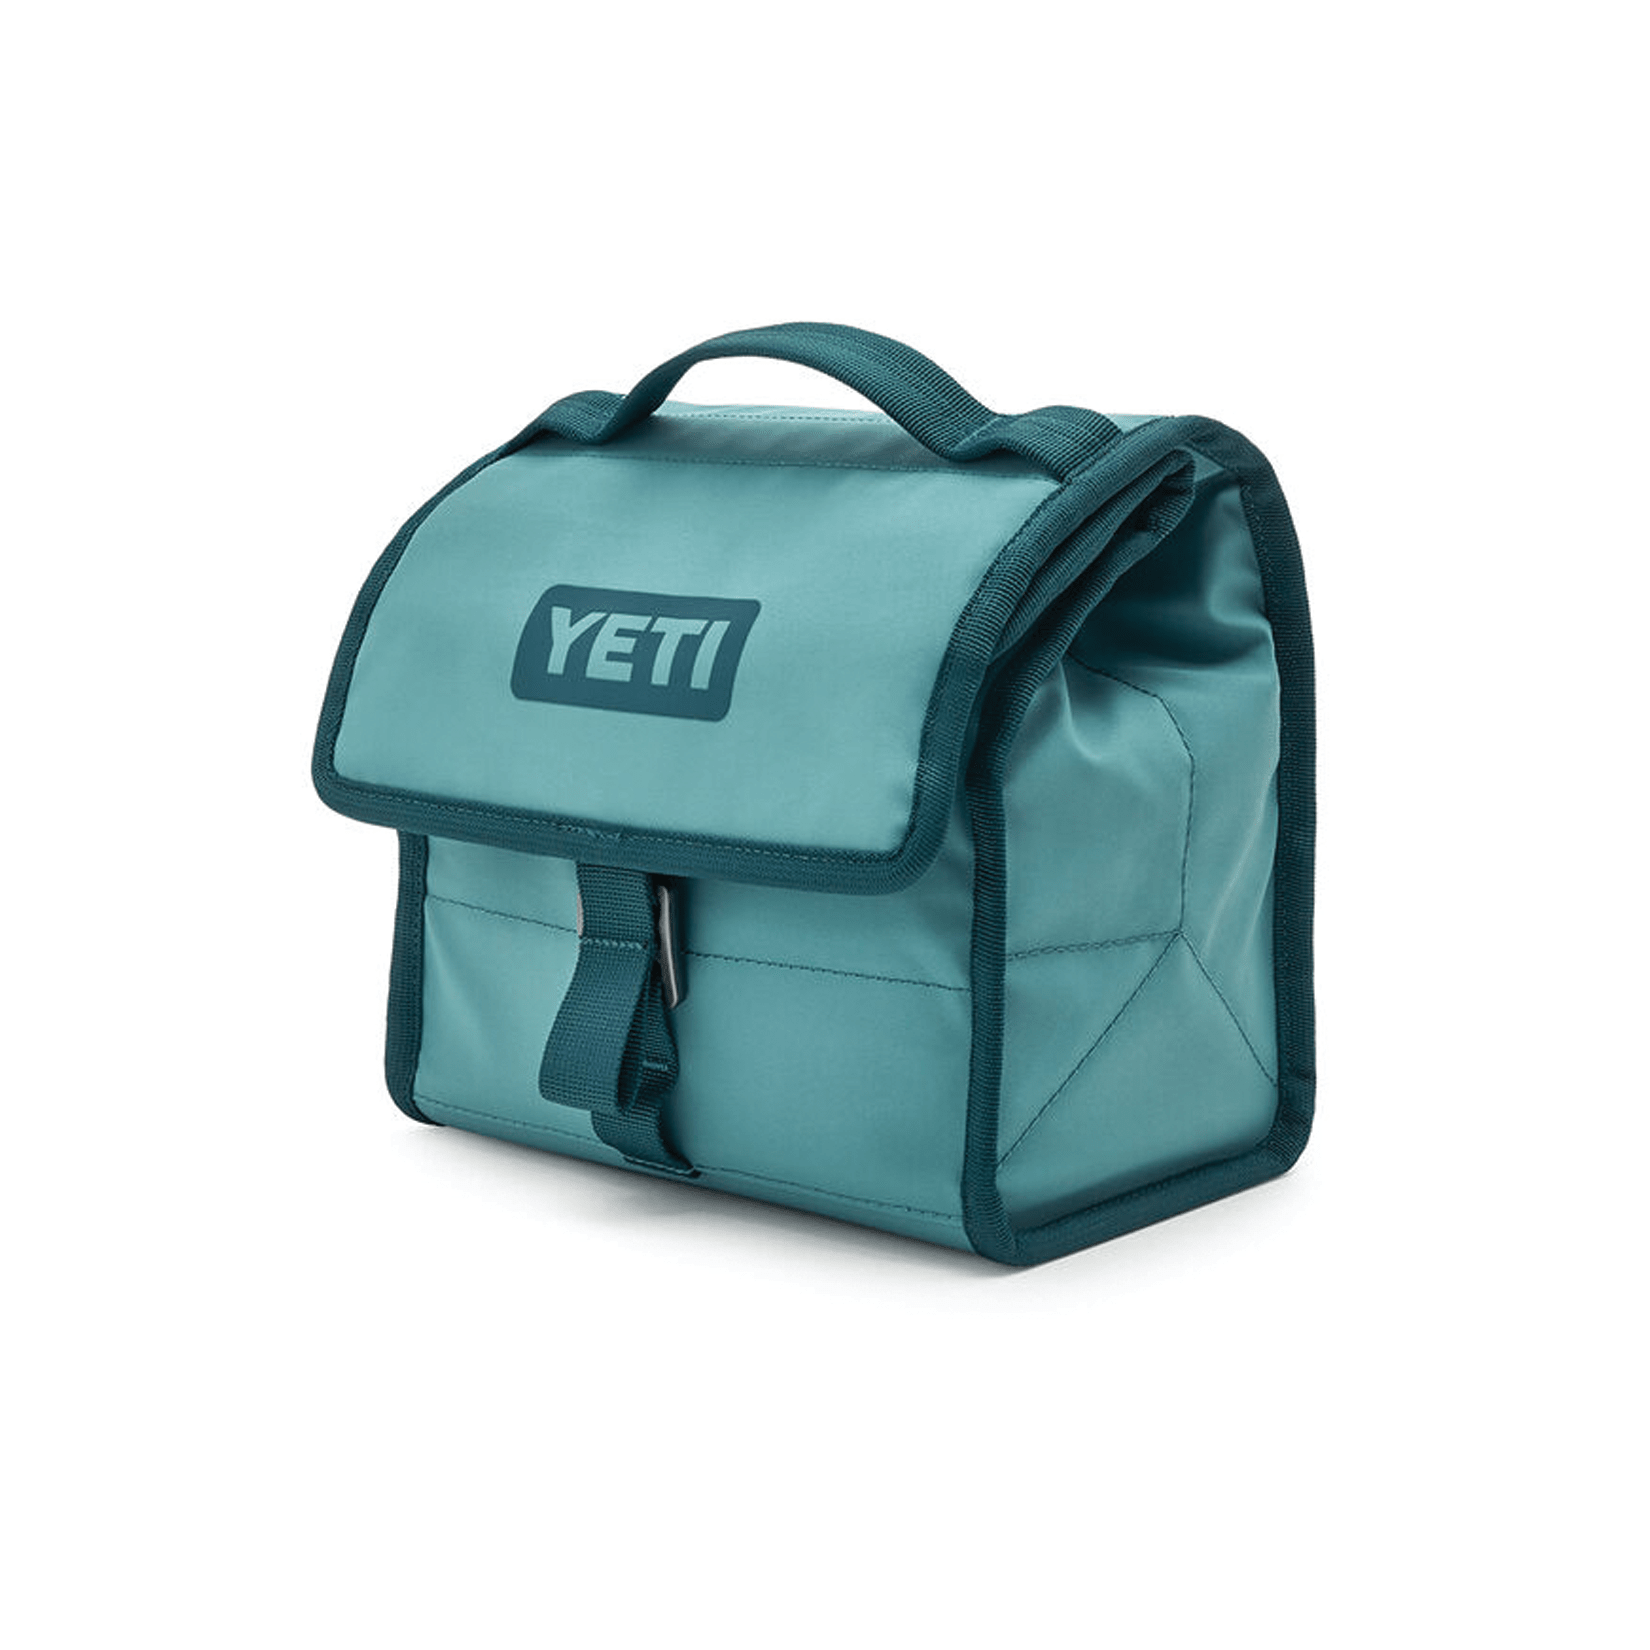 YETI Daytrip Lunch Bag - 18060130014